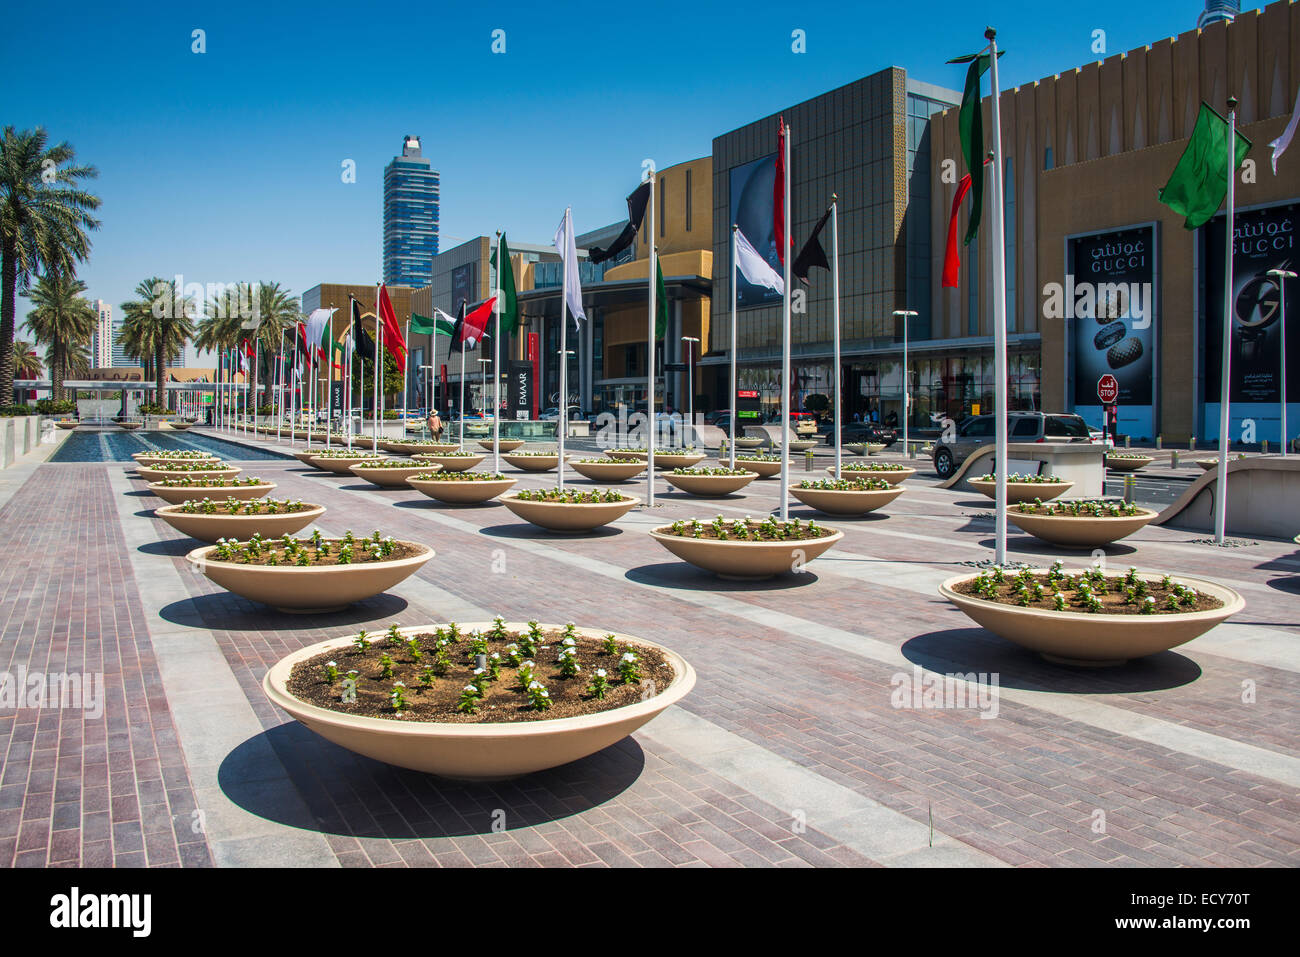 La entrada al centro comercial Dubai Mall, Dubai, Emiratos Árabes Unidos. Foto de stock